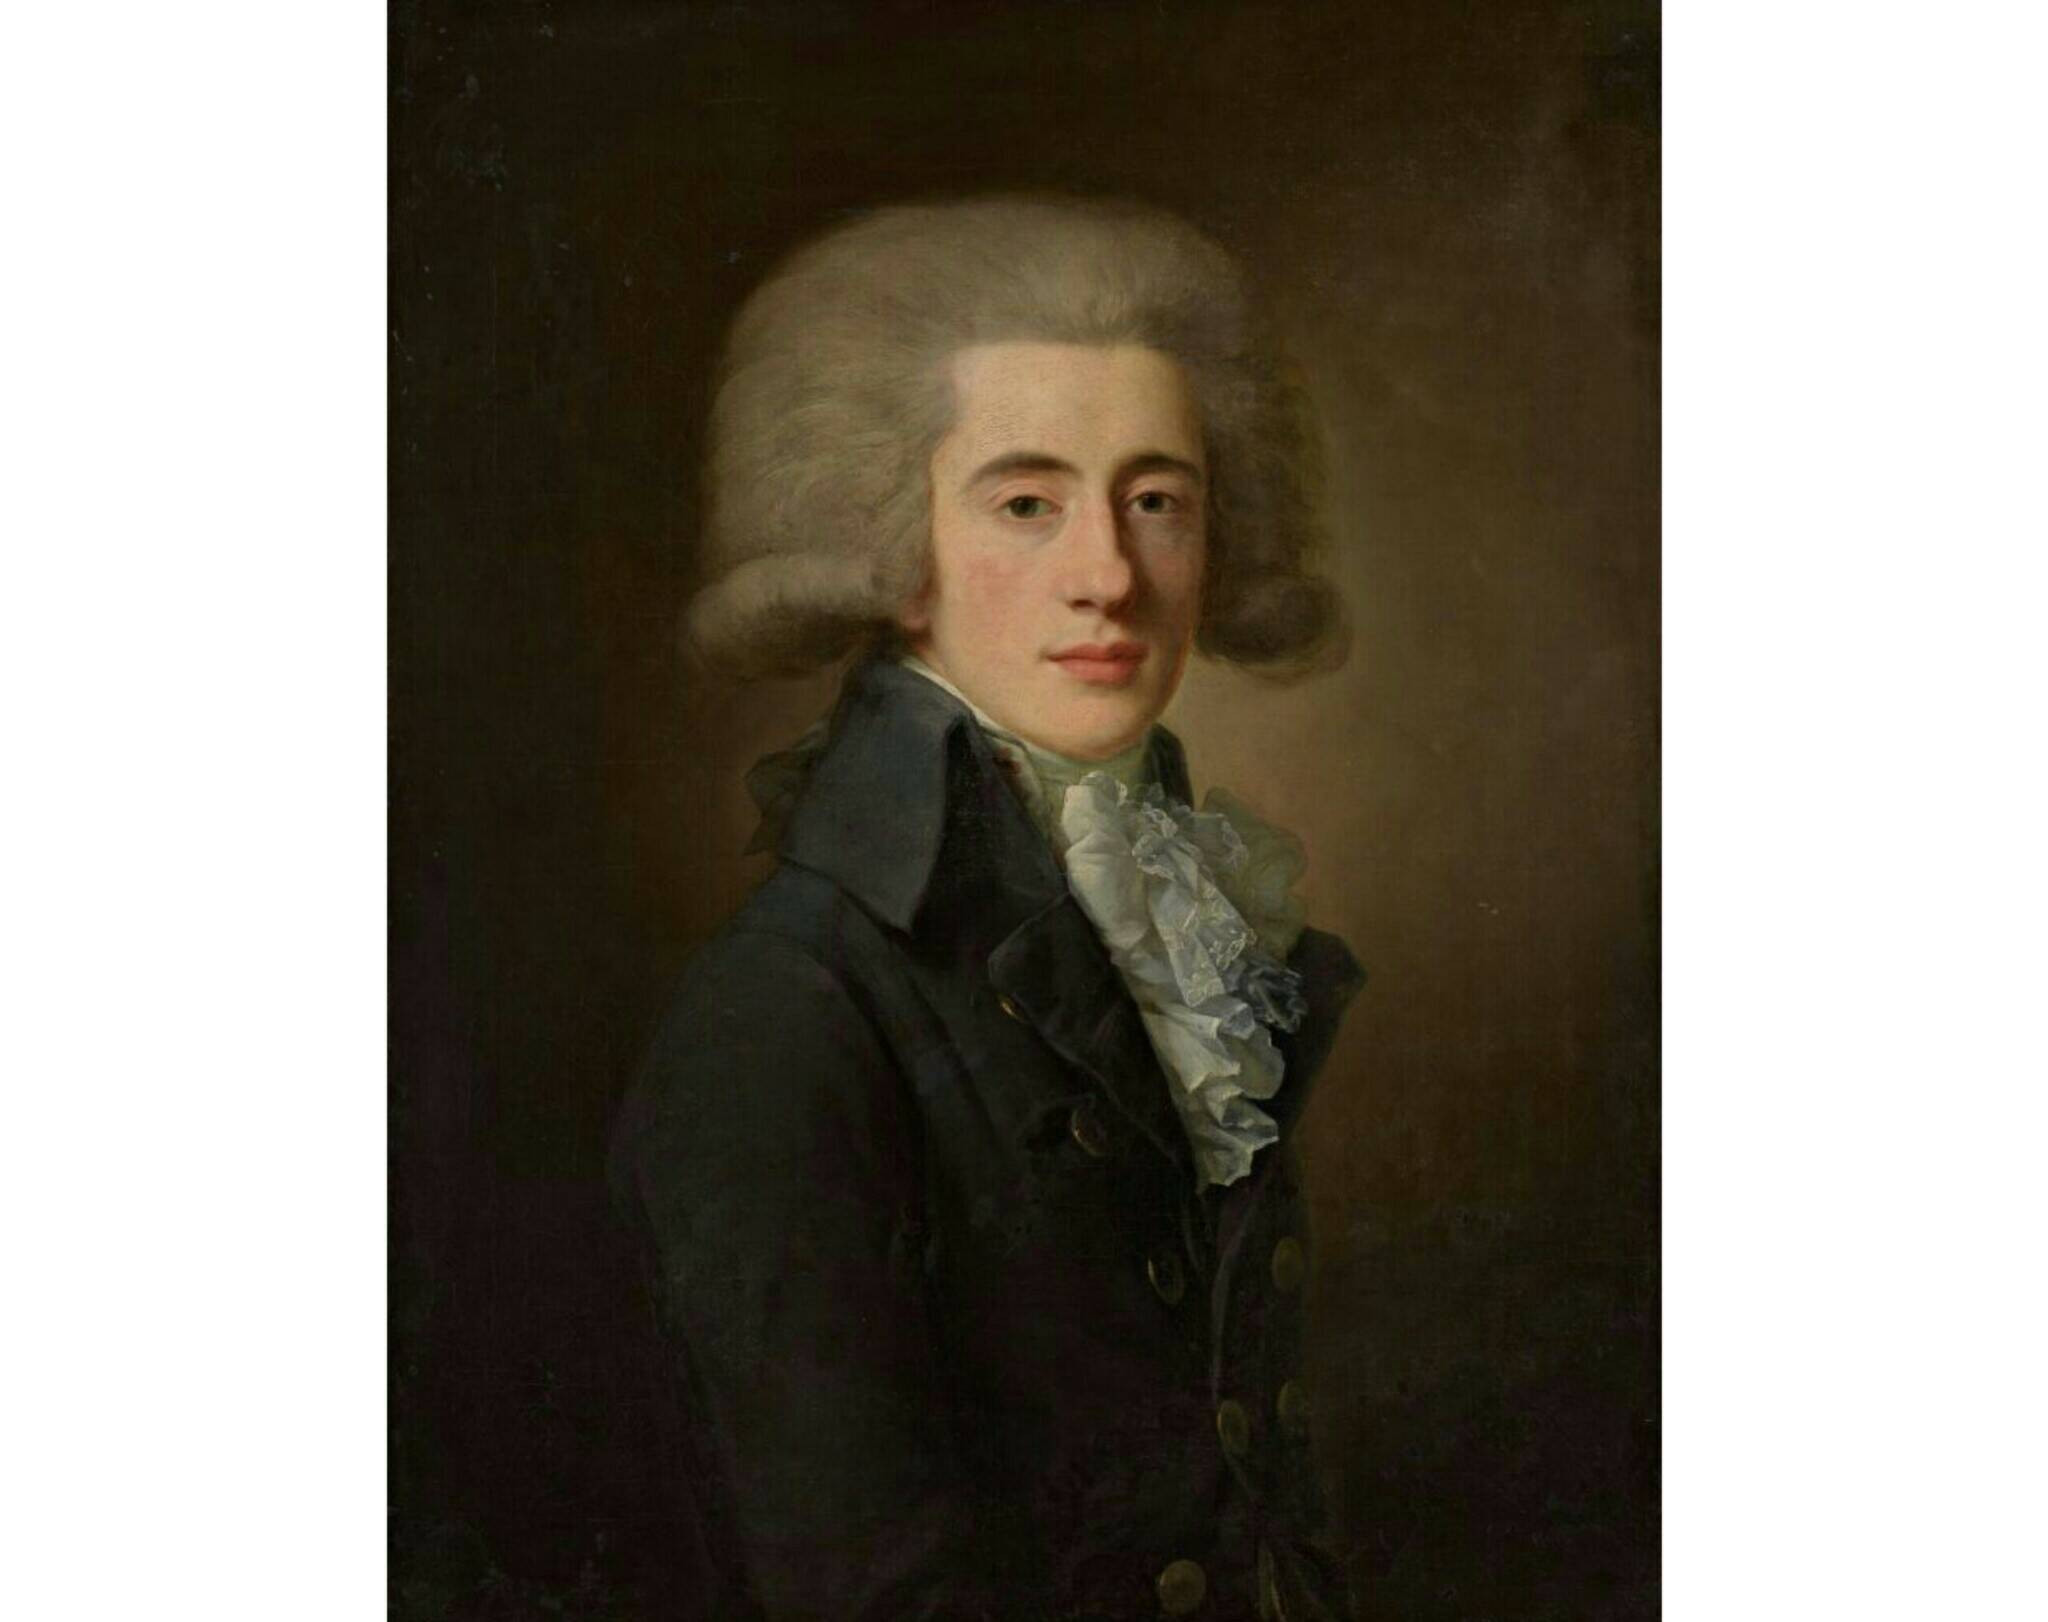 Вуаль Жан-Луи «Портрет графа Н.П. Панина», 1792 год. Из собрания Третьяковской галереи